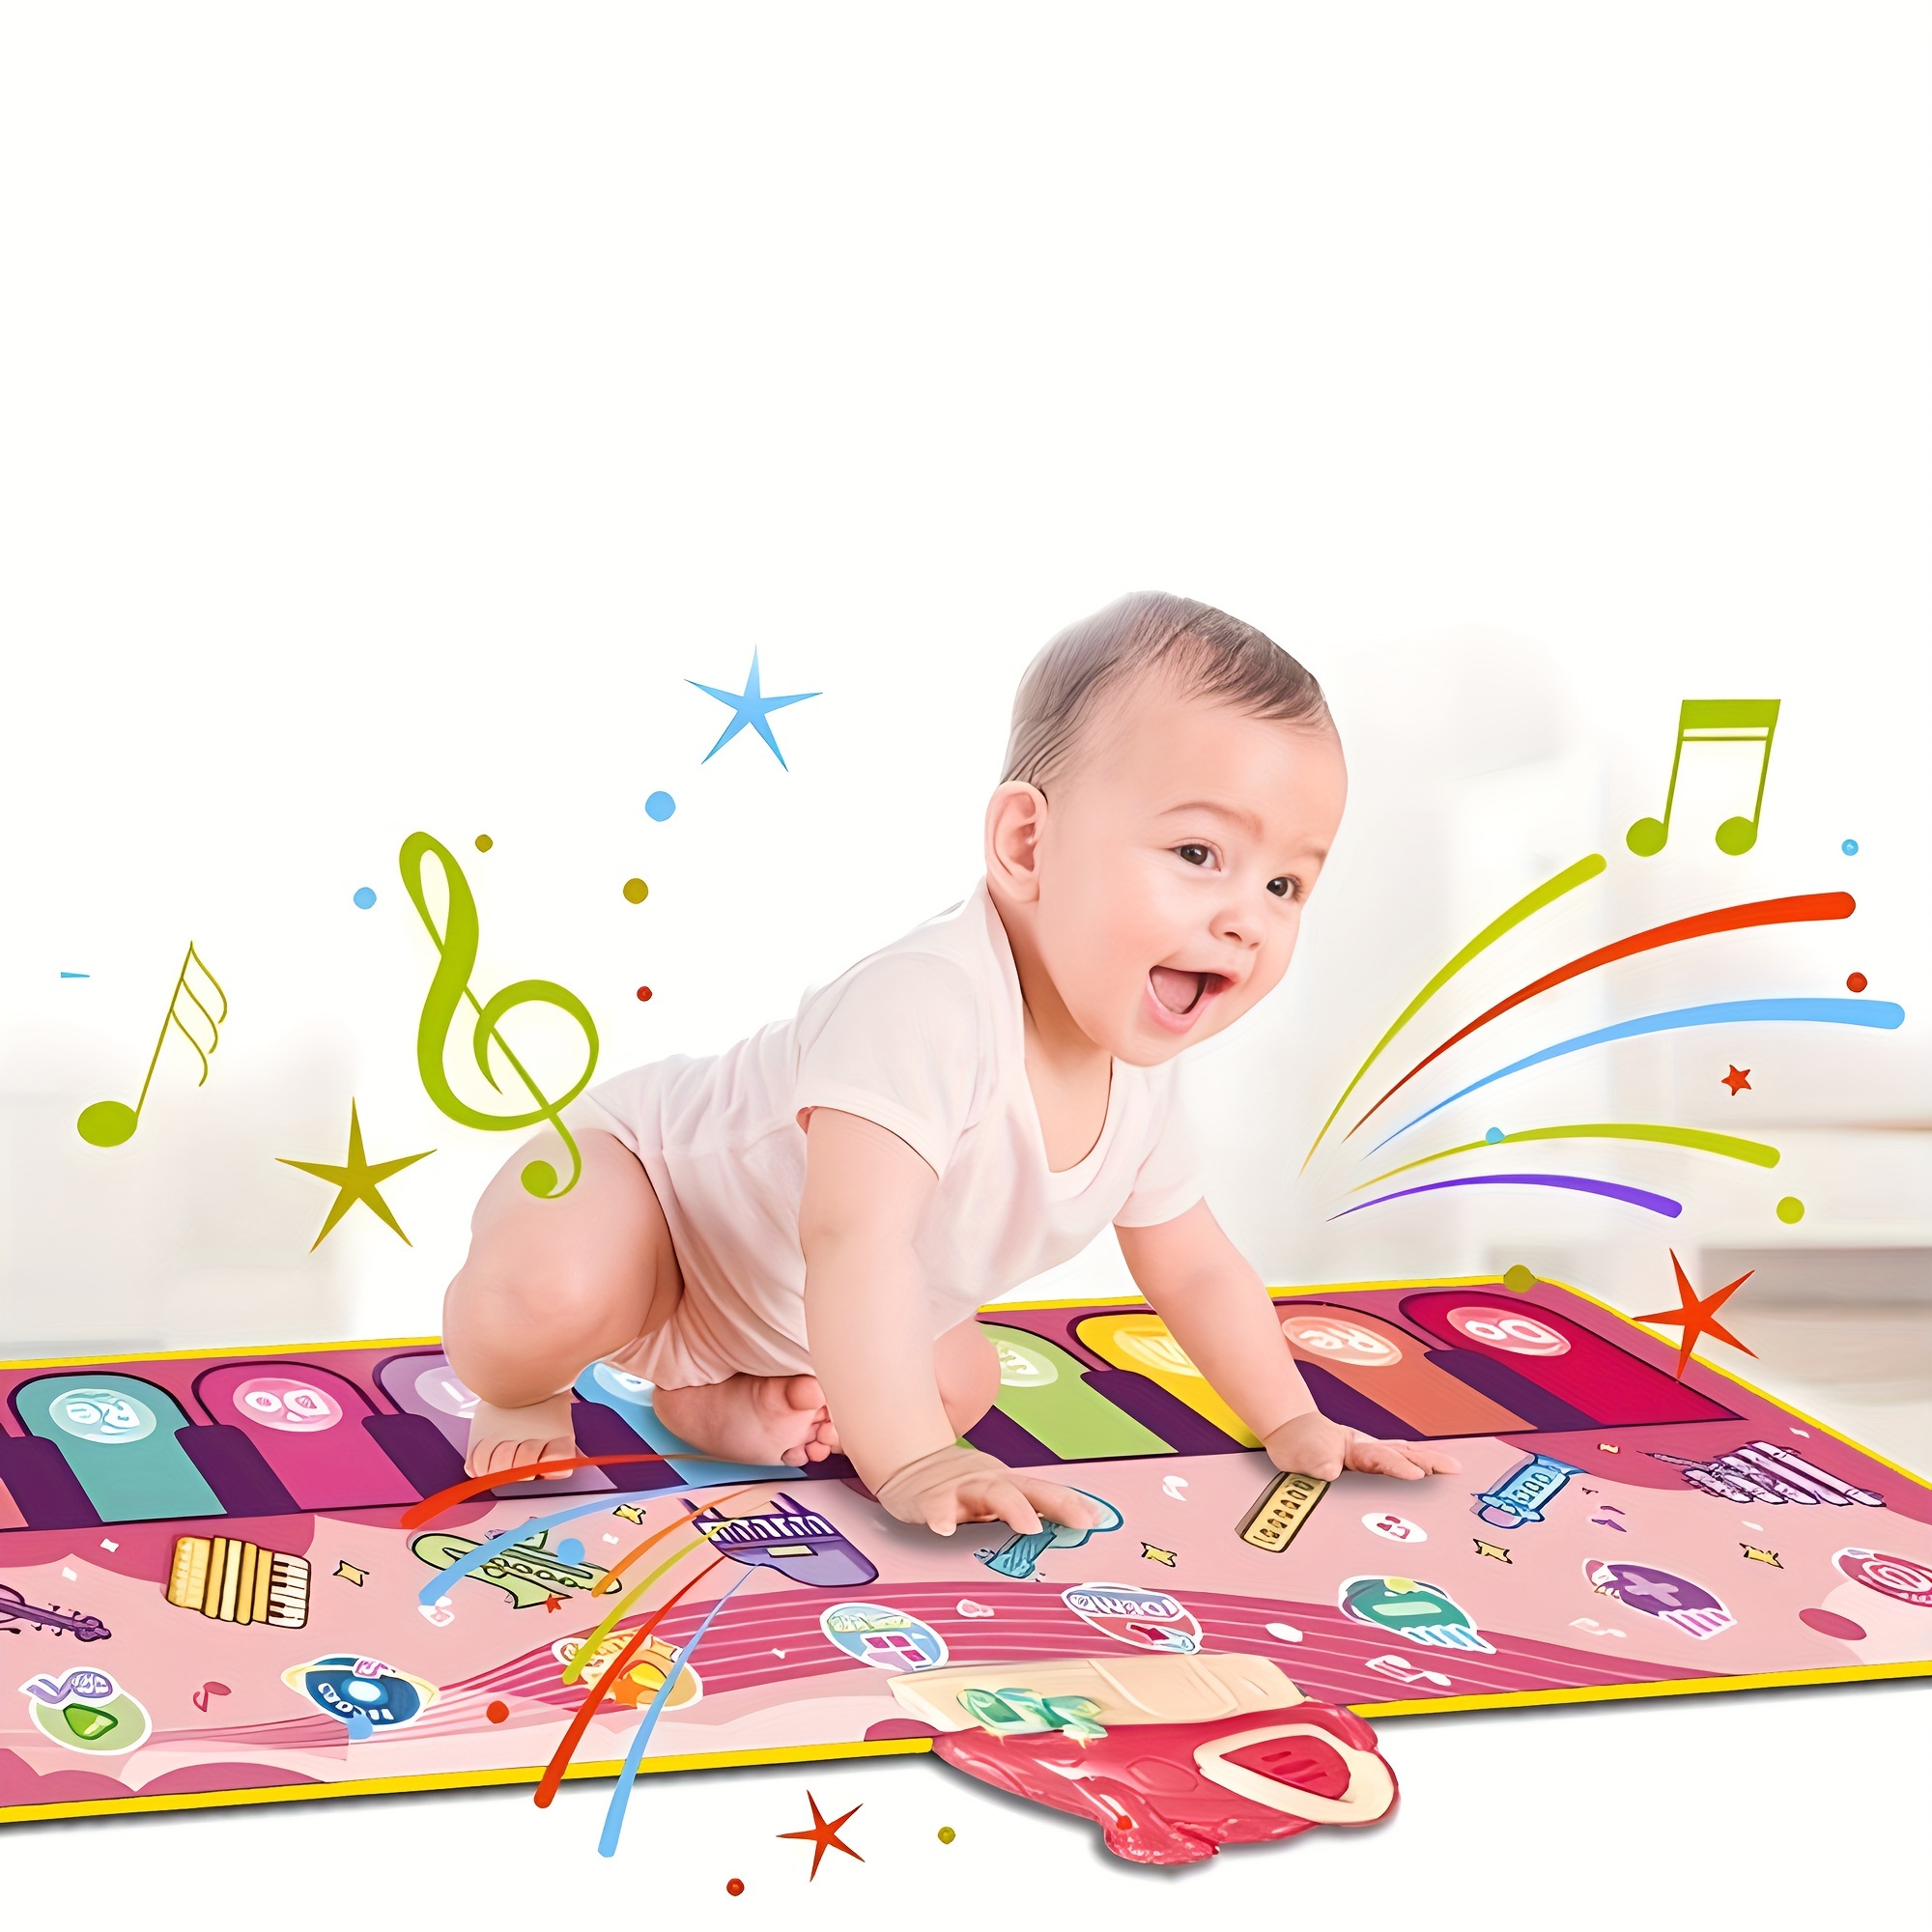 Tapis De Piano Musical Pour Bébé, Tapis Musical Amélioré Avec 8